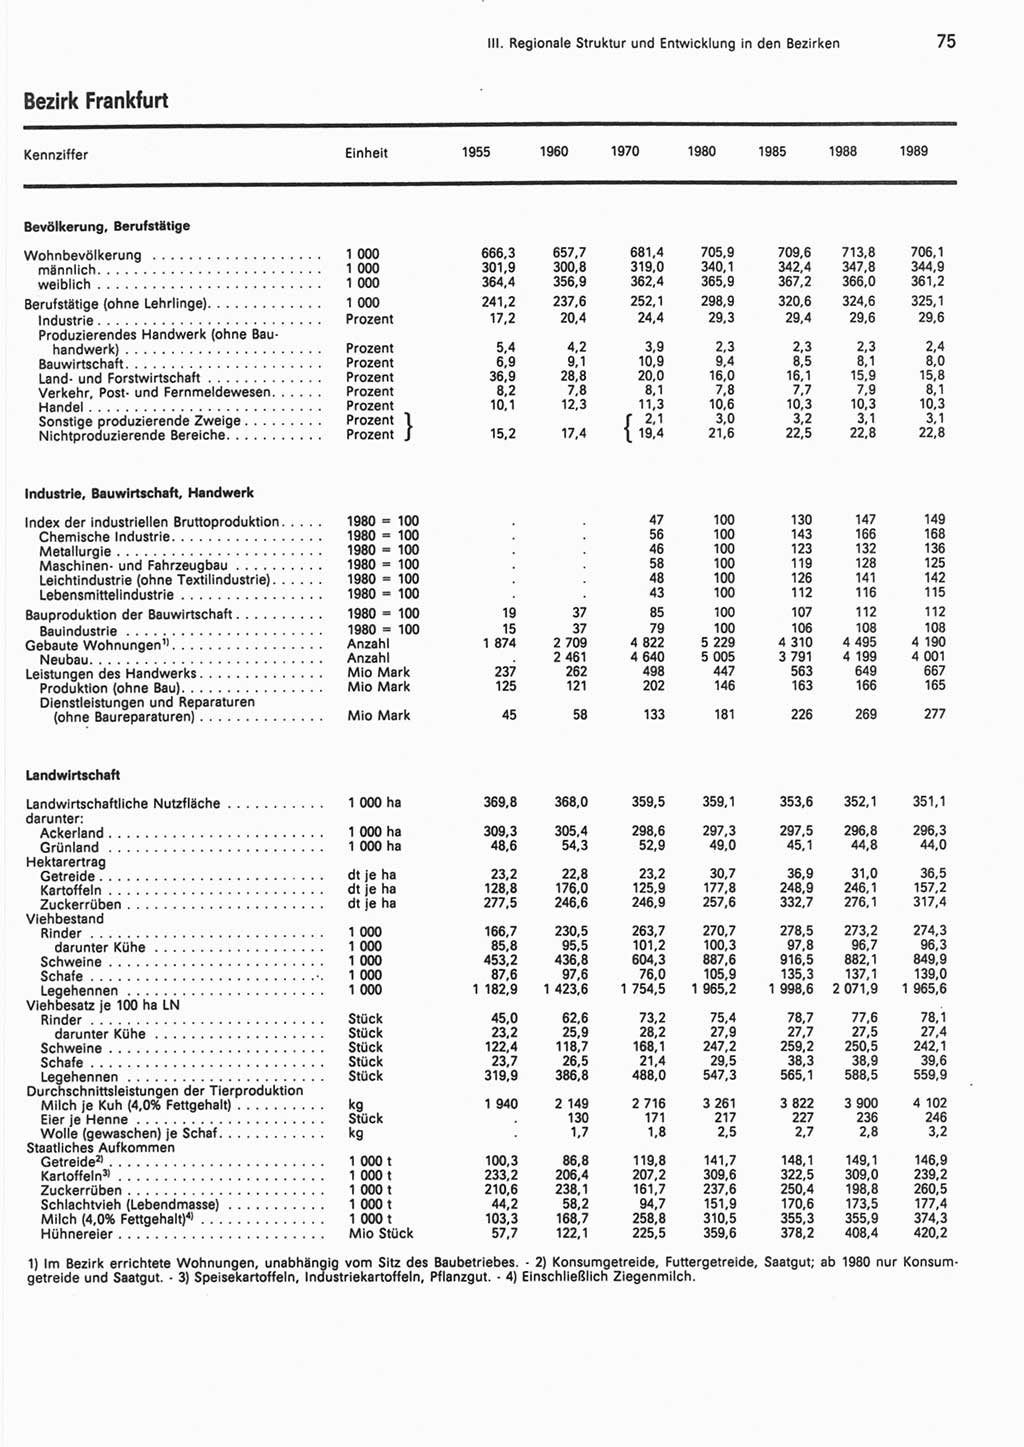 Statistisches Jahrbuch der Deutschen Demokratischen Republik (DDR) 1990, Seite 75 (Stat. Jb. DDR 1990, S. 75)